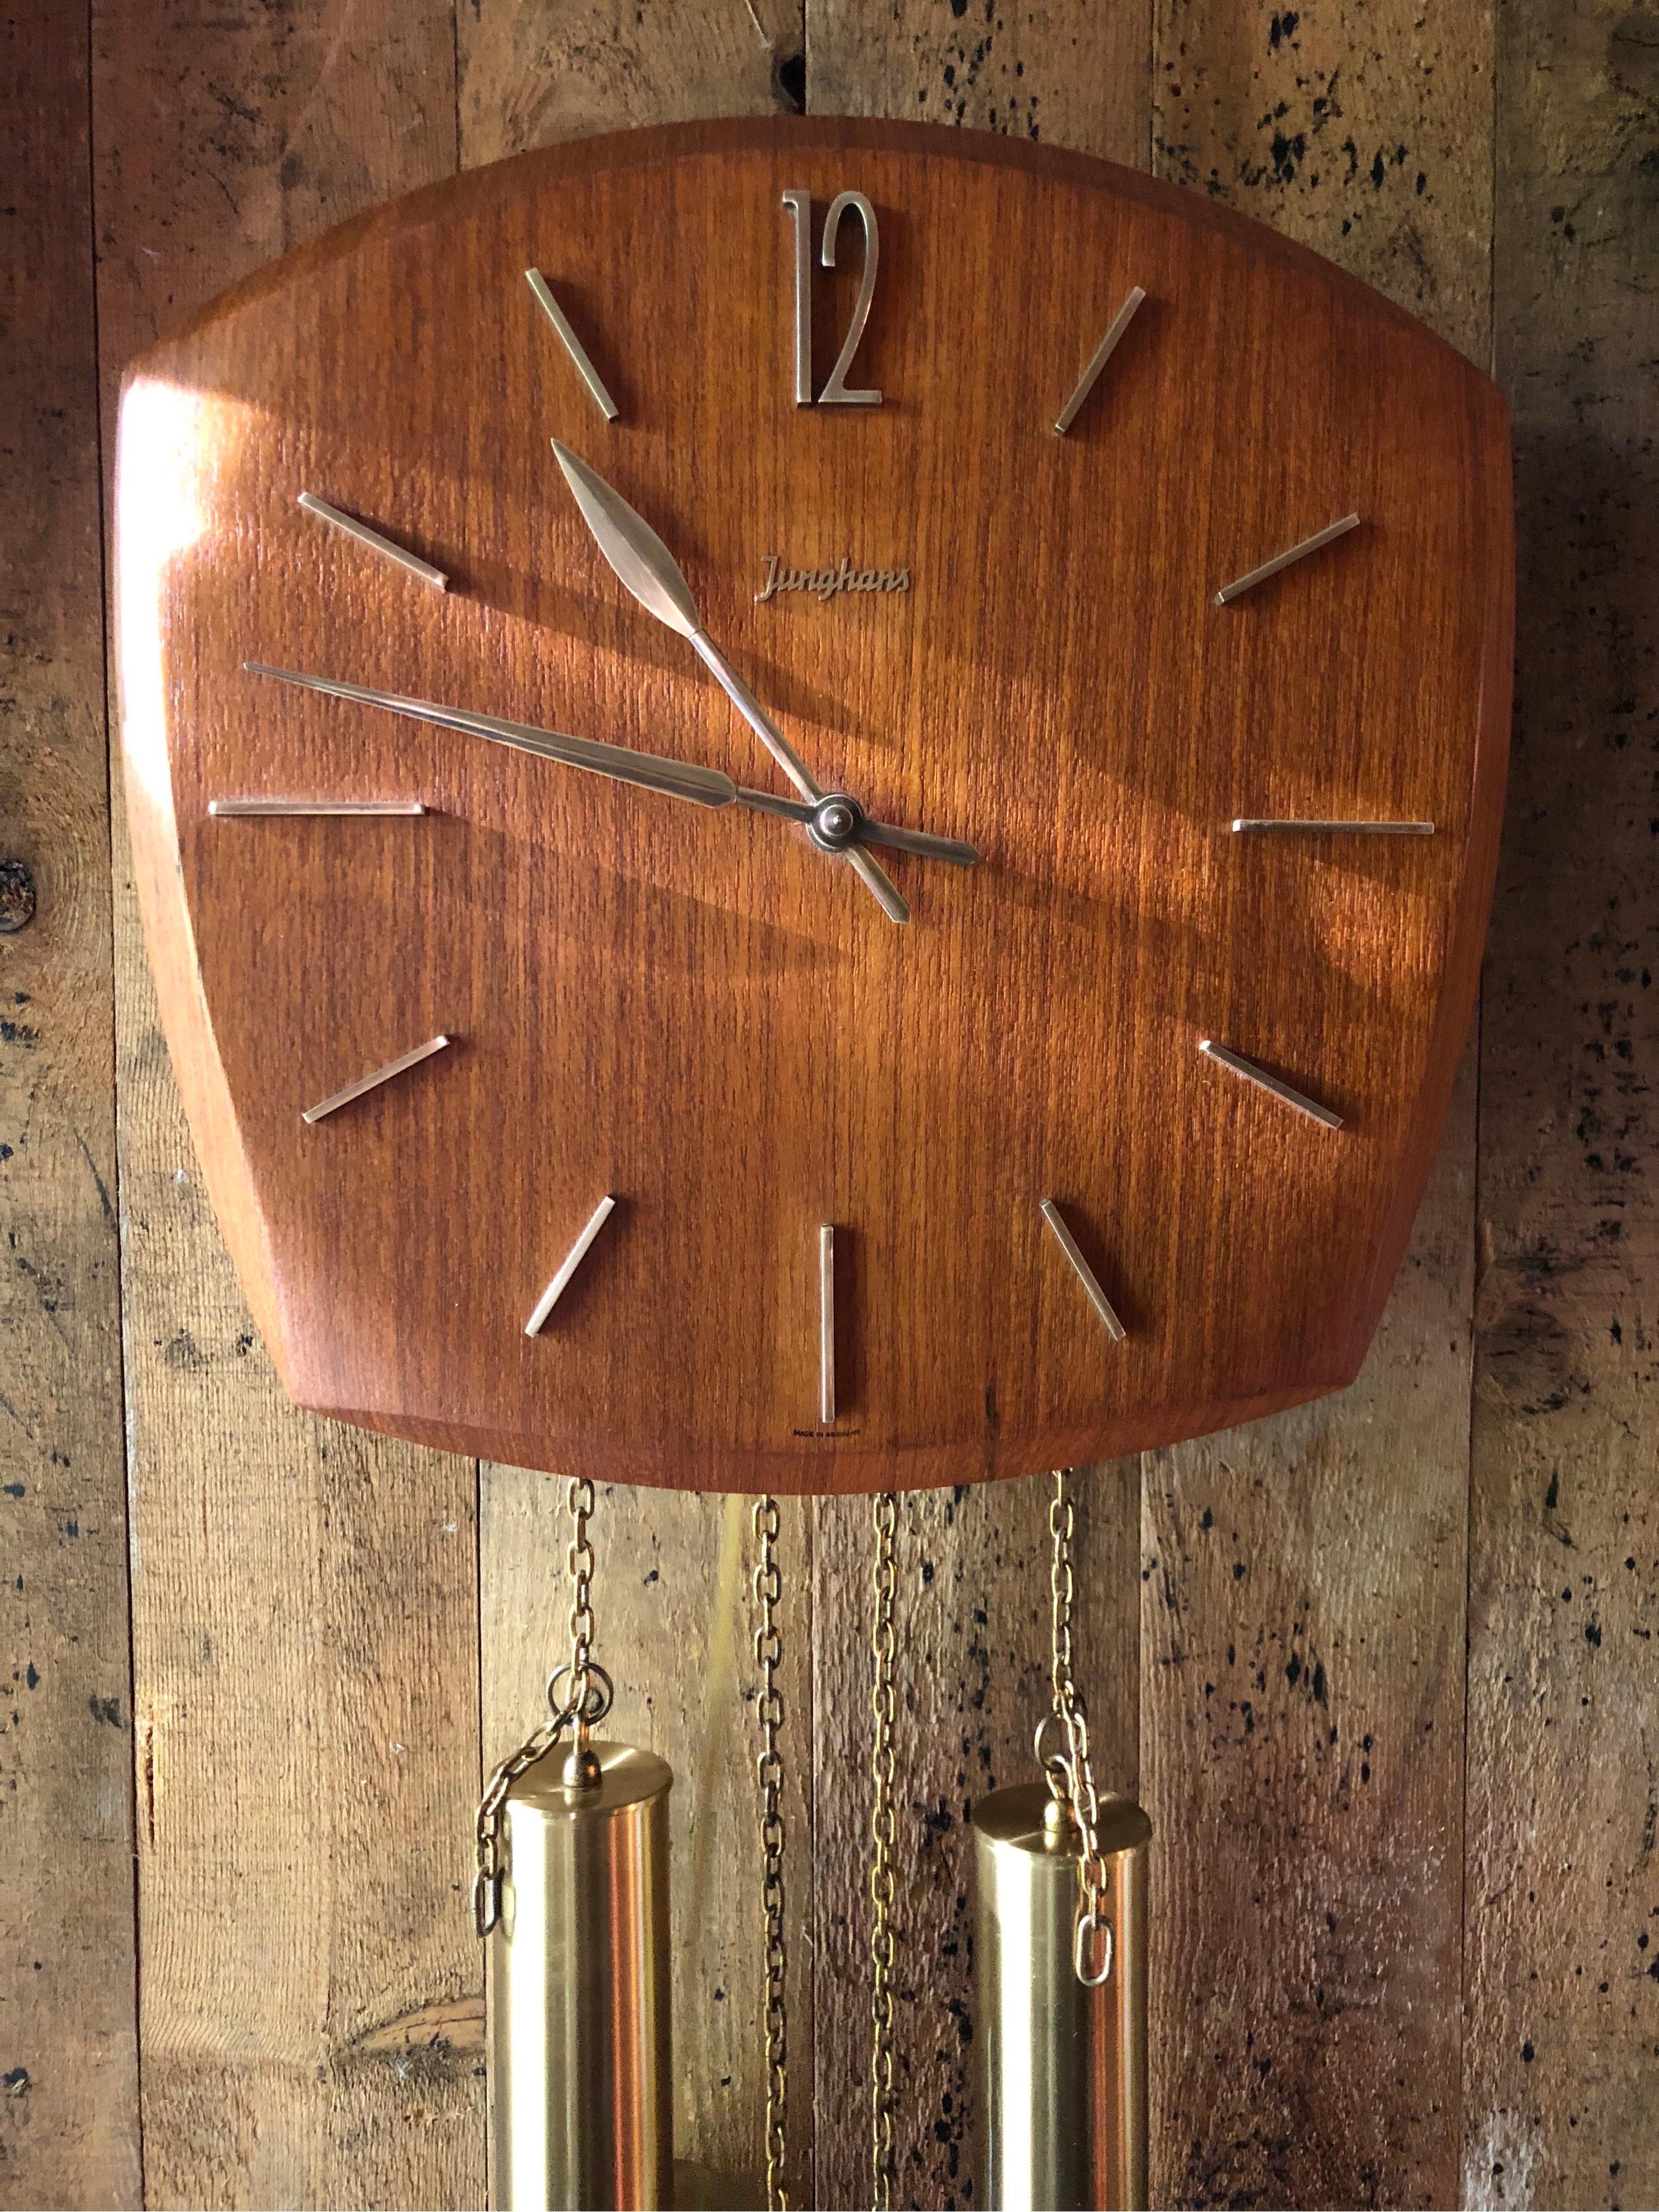 Mid-20th Century Vintage Junghans Pendulum Wall Clock in Teak Veneer from the 1960s